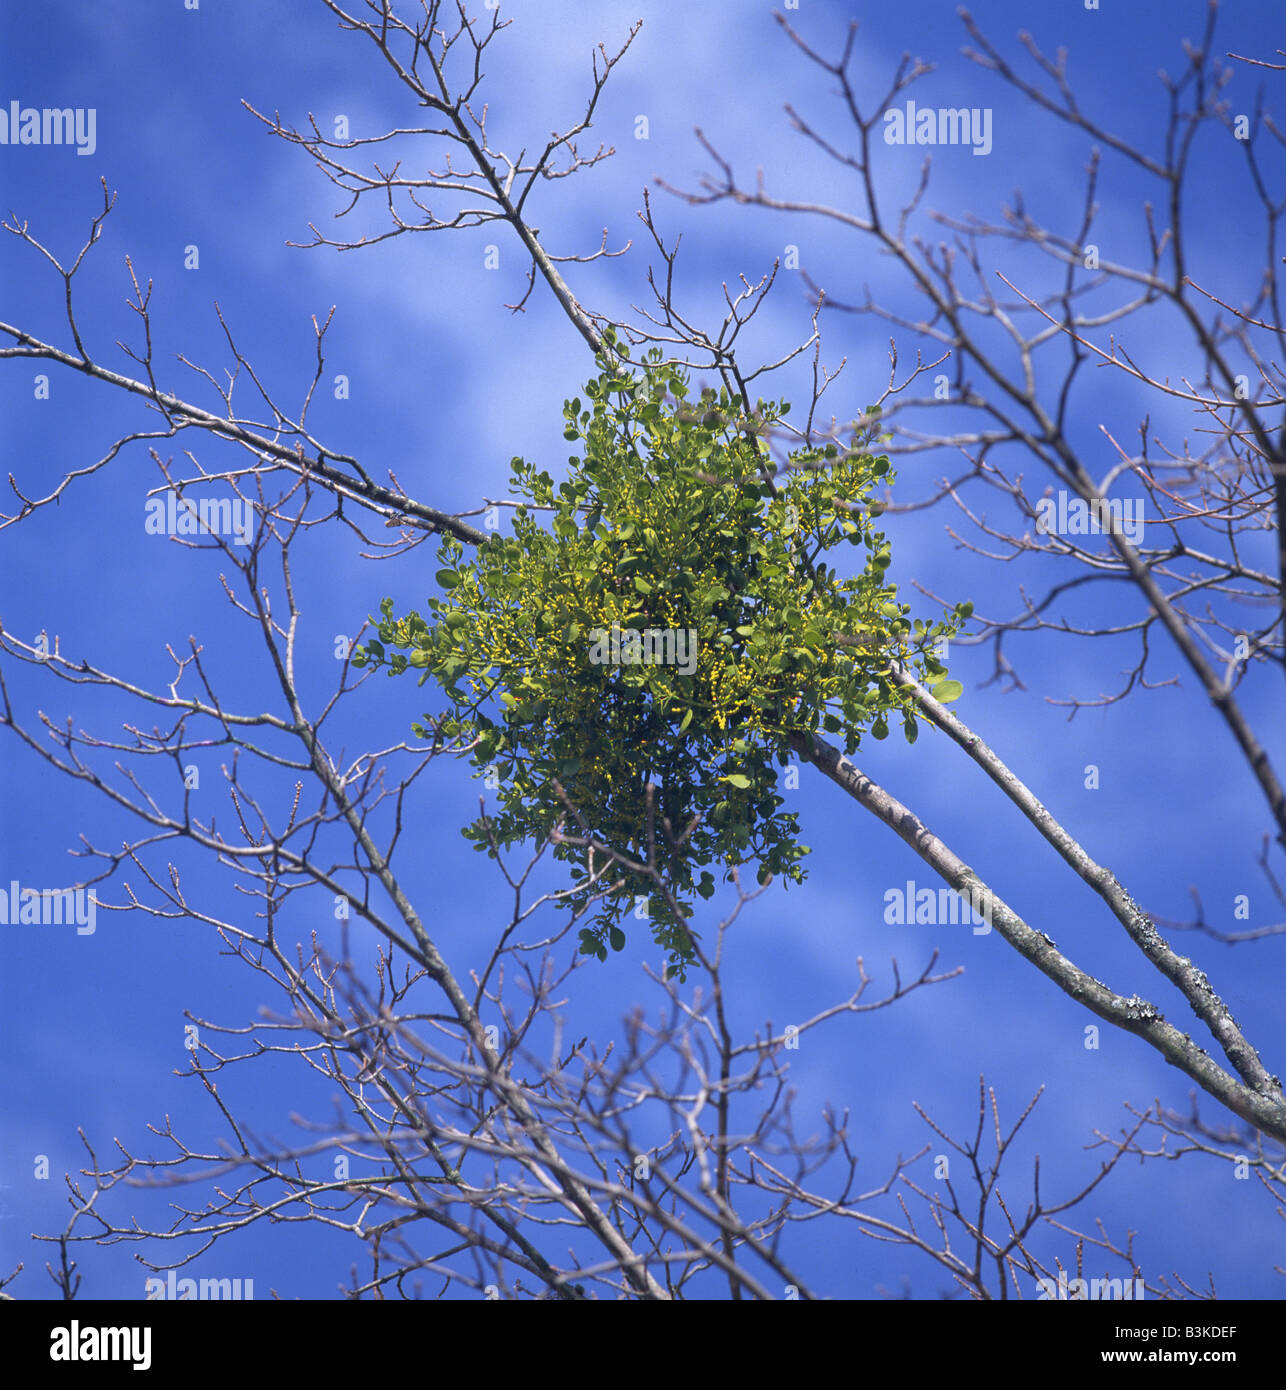 CLOSE-UP OF MISTLETOE (PHORADENDRON SEROTINUM)  IN TREE / GEORGIA Stock Photo